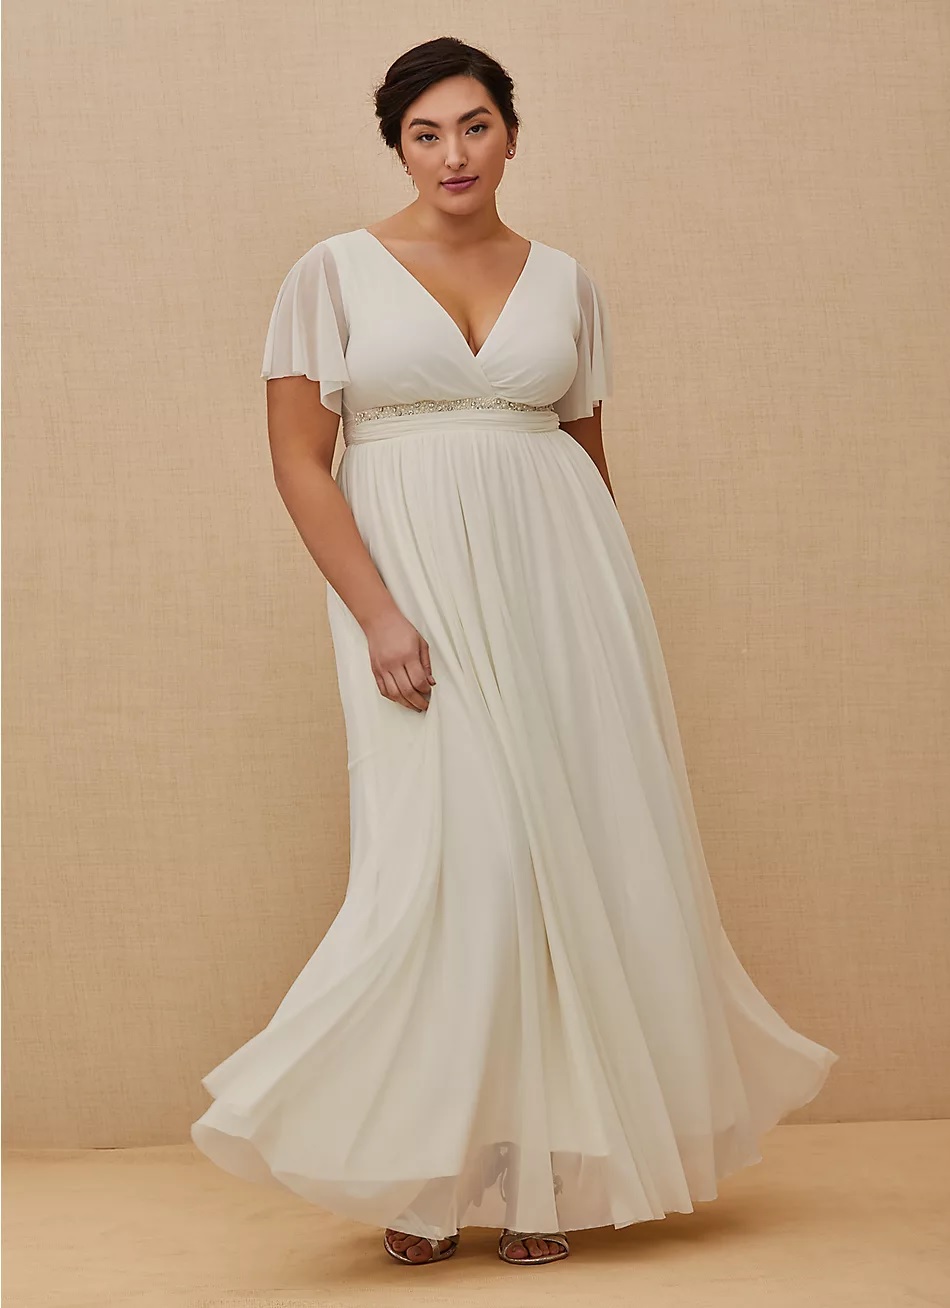 torrid wedding dress in white with empire waist